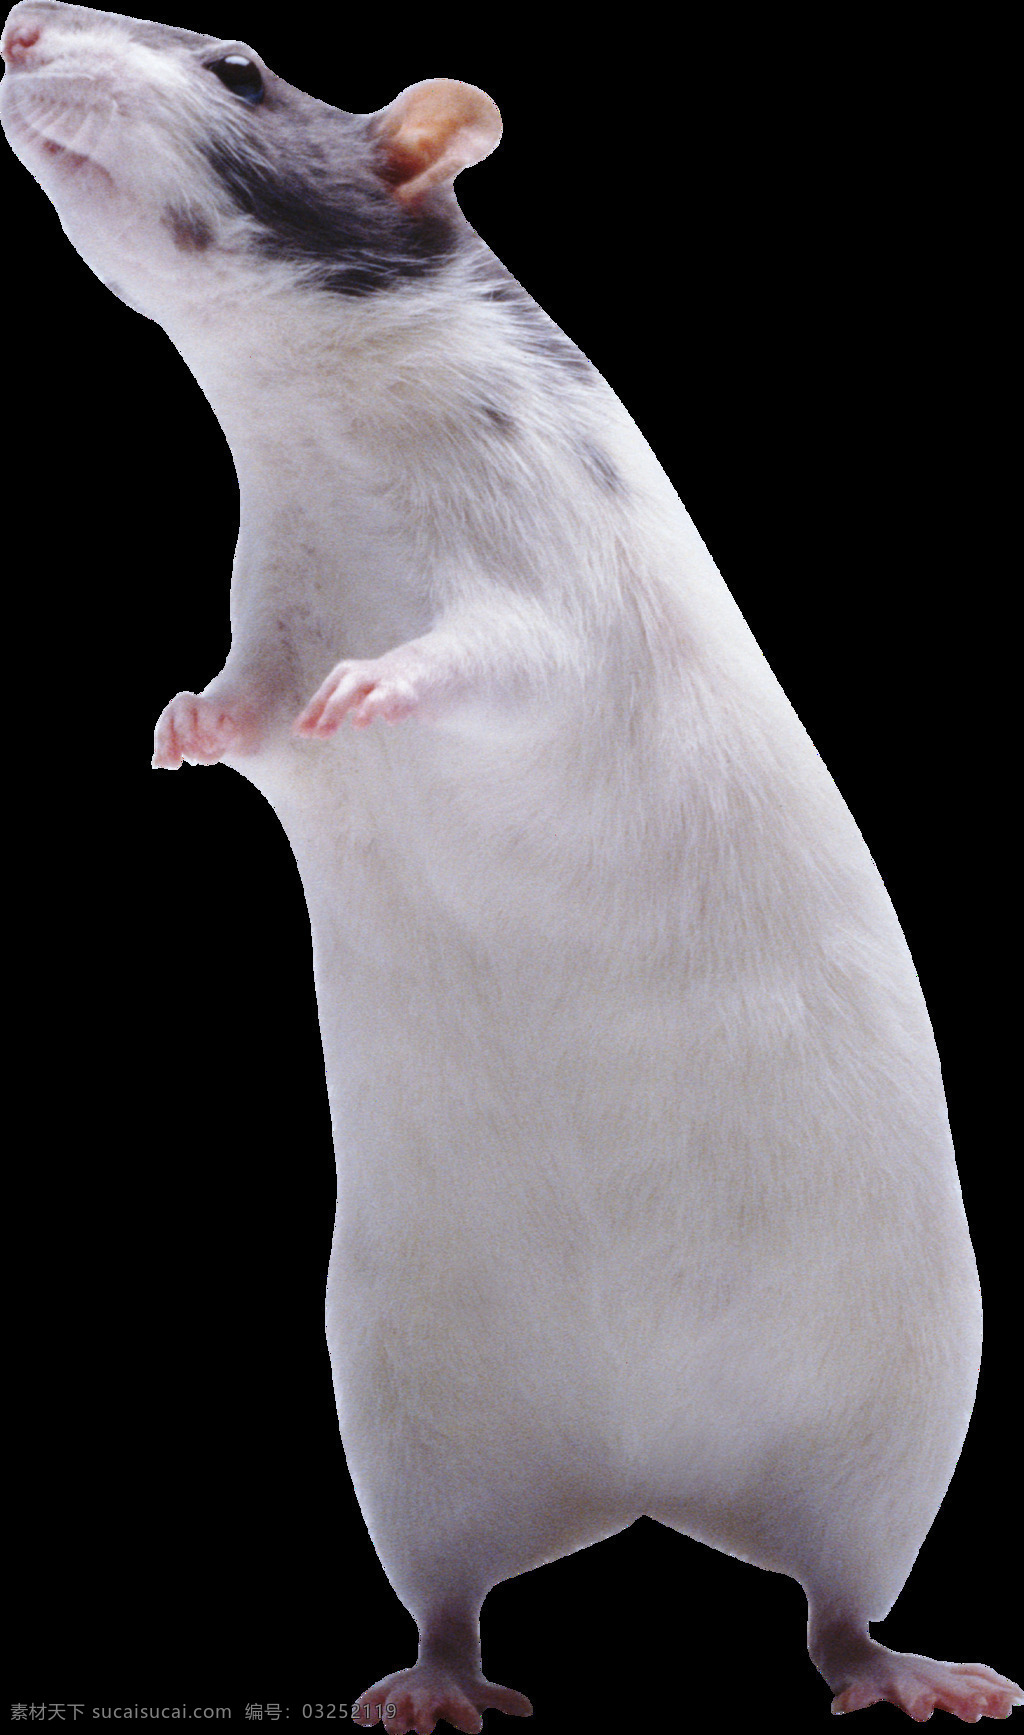 双腿 站立 白色 老鼠 免 抠 透明 图 层 老鼠卡通图片 日本 核辐射 变异 世界 上 最大 巨型 可爱老鼠 简 笔画 大全 老鼠简笔画 彩色老鼠图片 田鼠